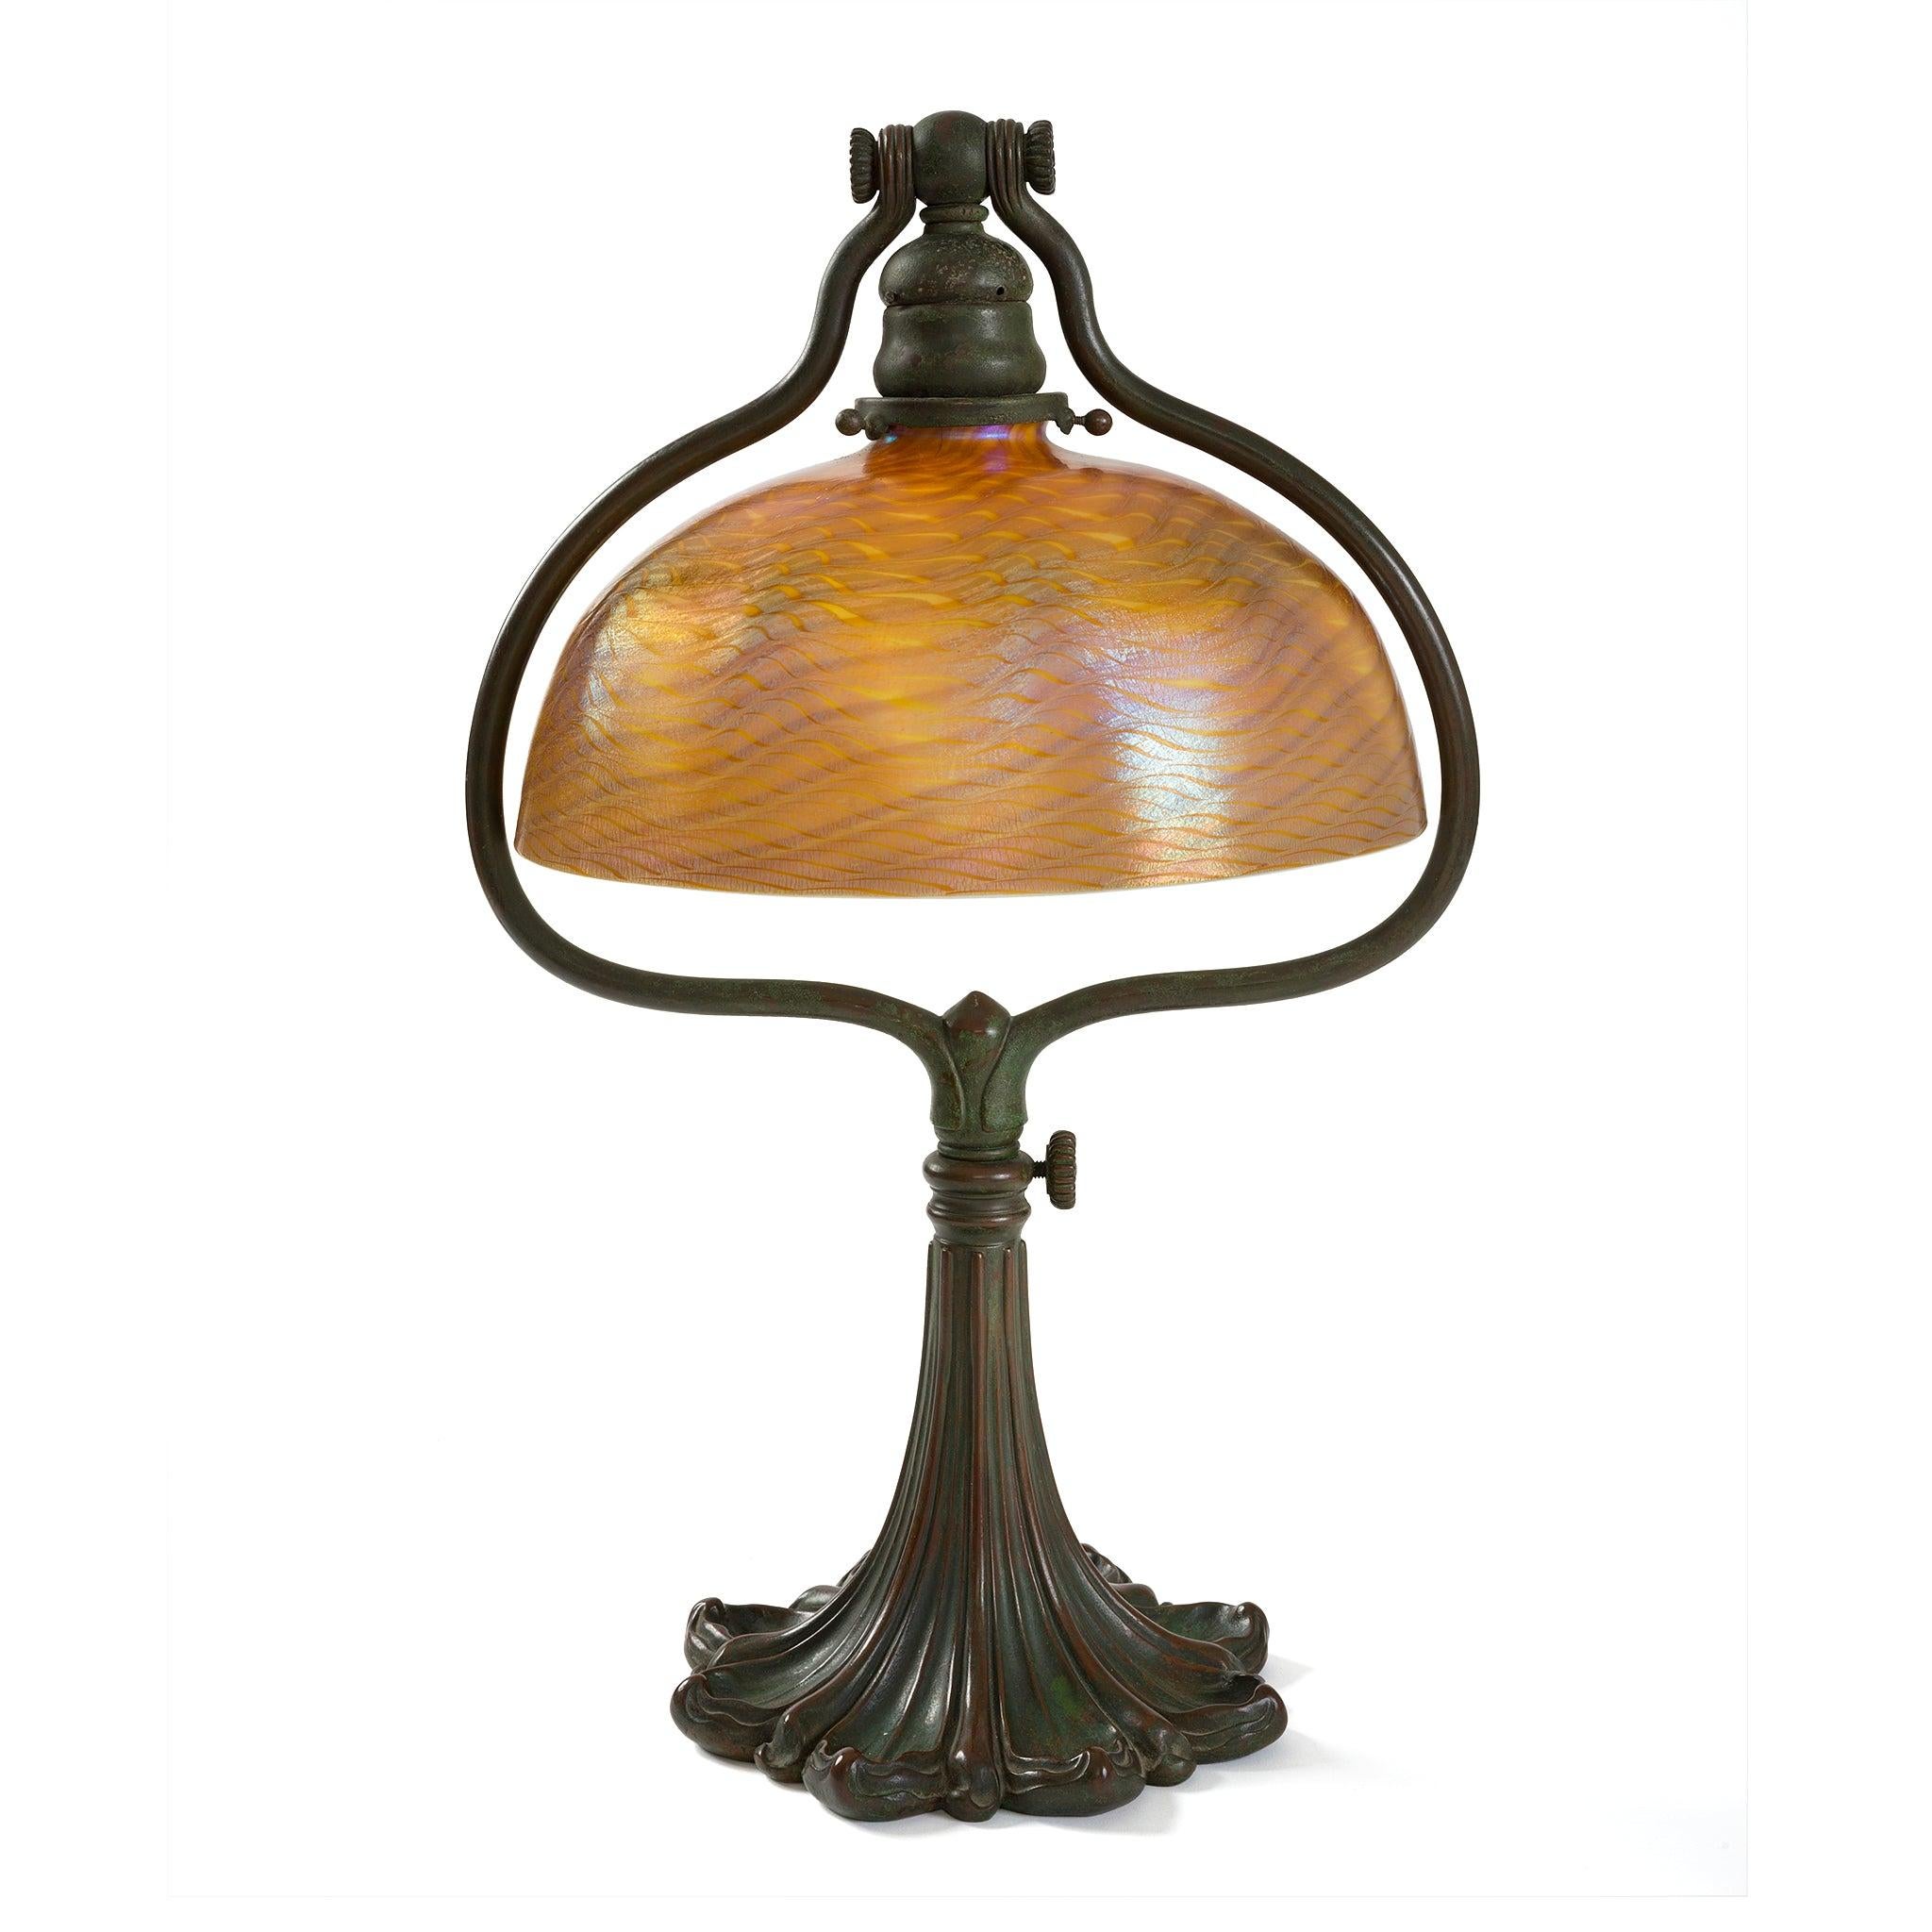 Cette lampe de bureau des studios Tiffany, datant d'environ 1910, présente un abat-jour en verre favrile damasquiné sur une base harpe réglable en bronze patiné. Dans des tons dichroïques ambre-doré et vert, l'abat-jour subtilement irisé est